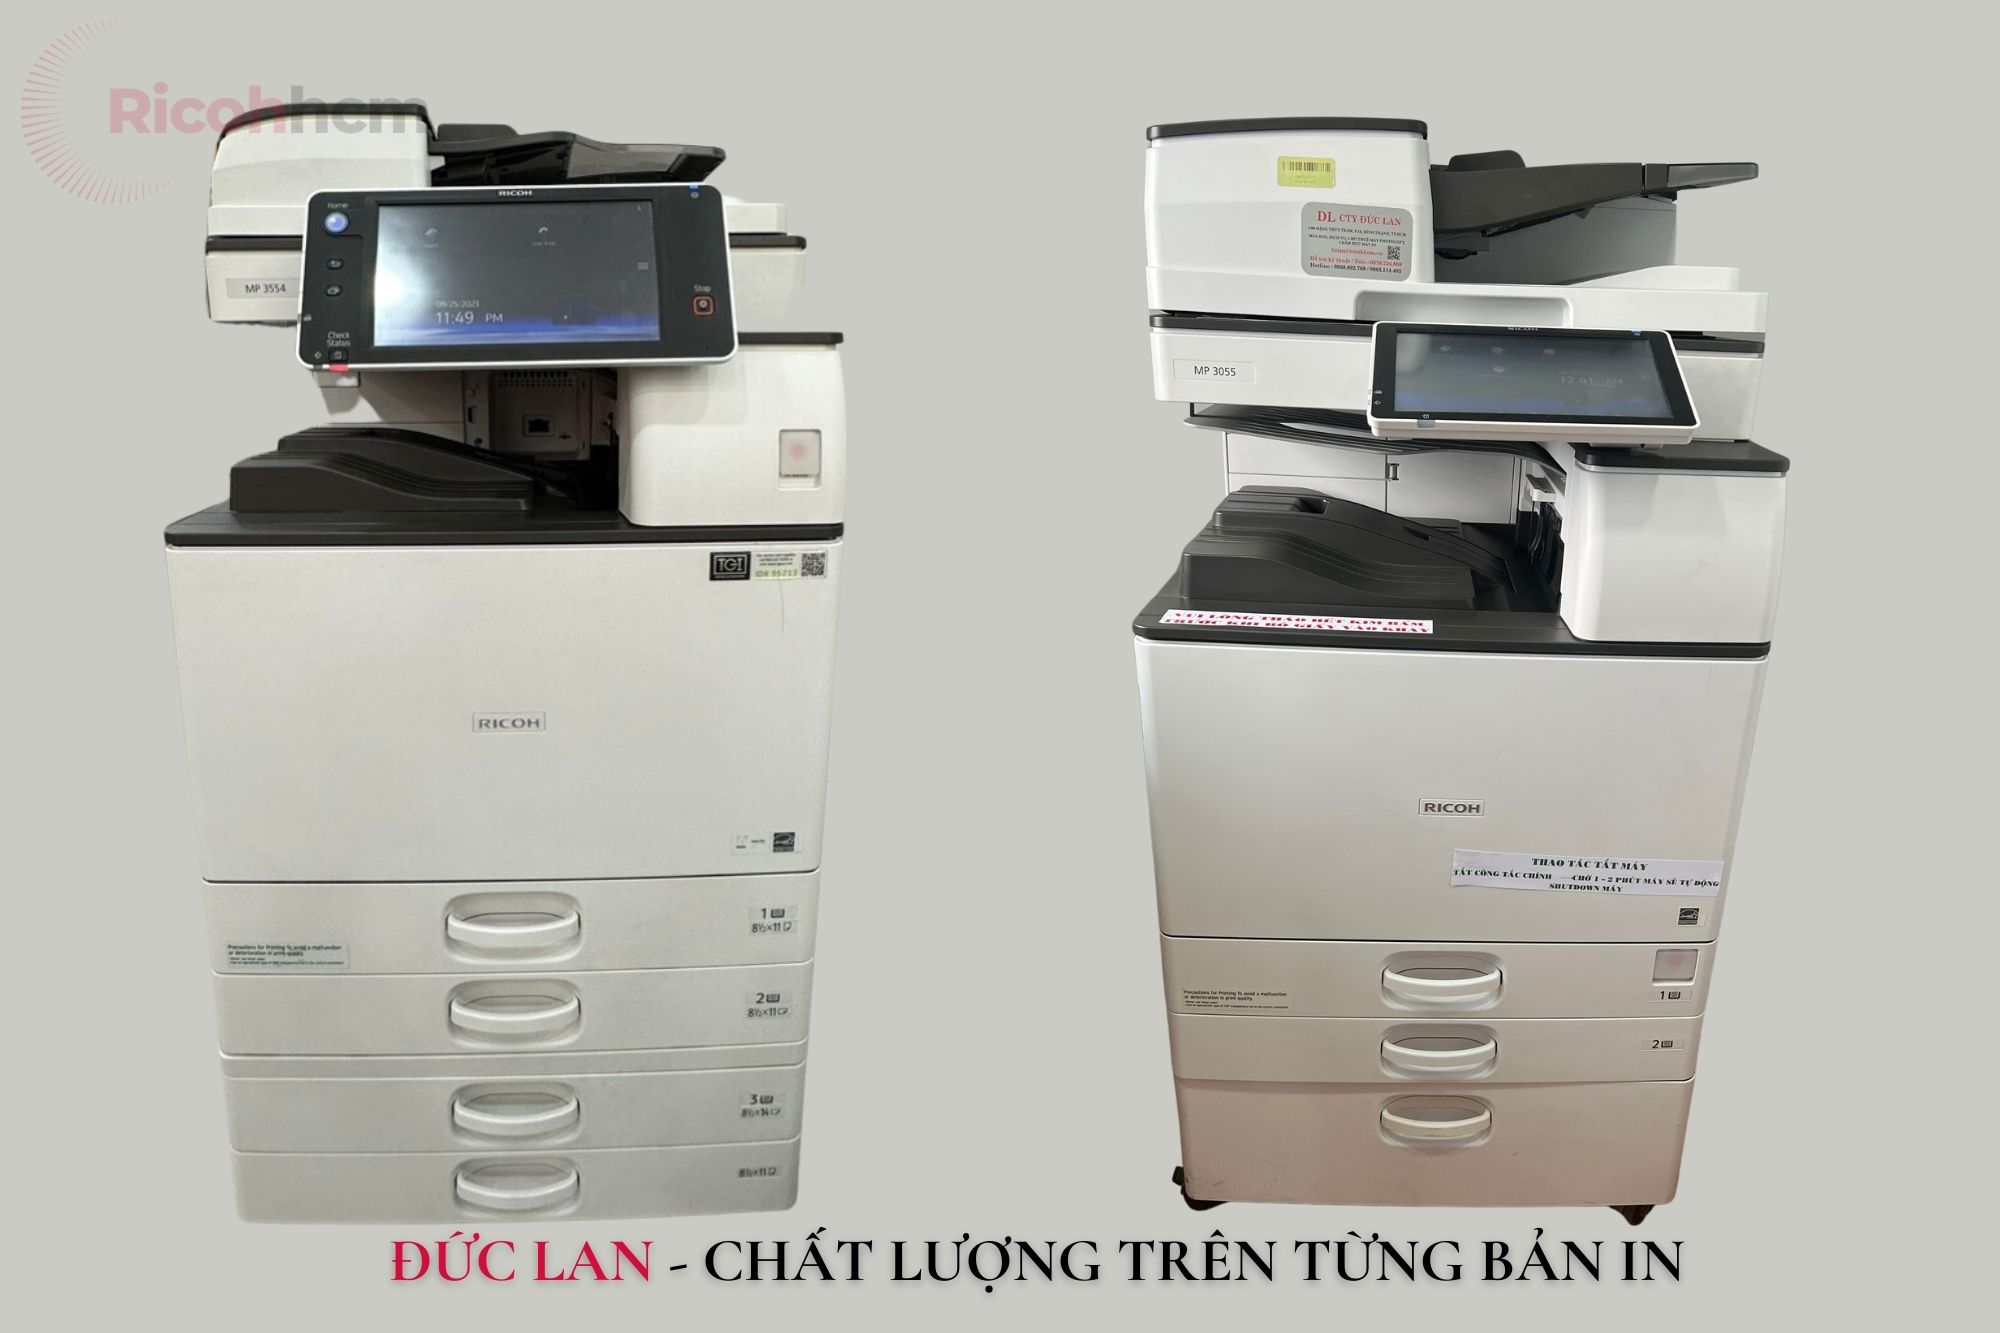 Một số yếu tố ảnh hưởng đến giá thuê máy photocopy huyện Xuân Lộc tỉnh Đồng Nai cụ thể là: loại máy photocopy, các tính năng của sản phẩm, độ mới của máy, đơn vị cung cấp dịch vụ cho thuê.